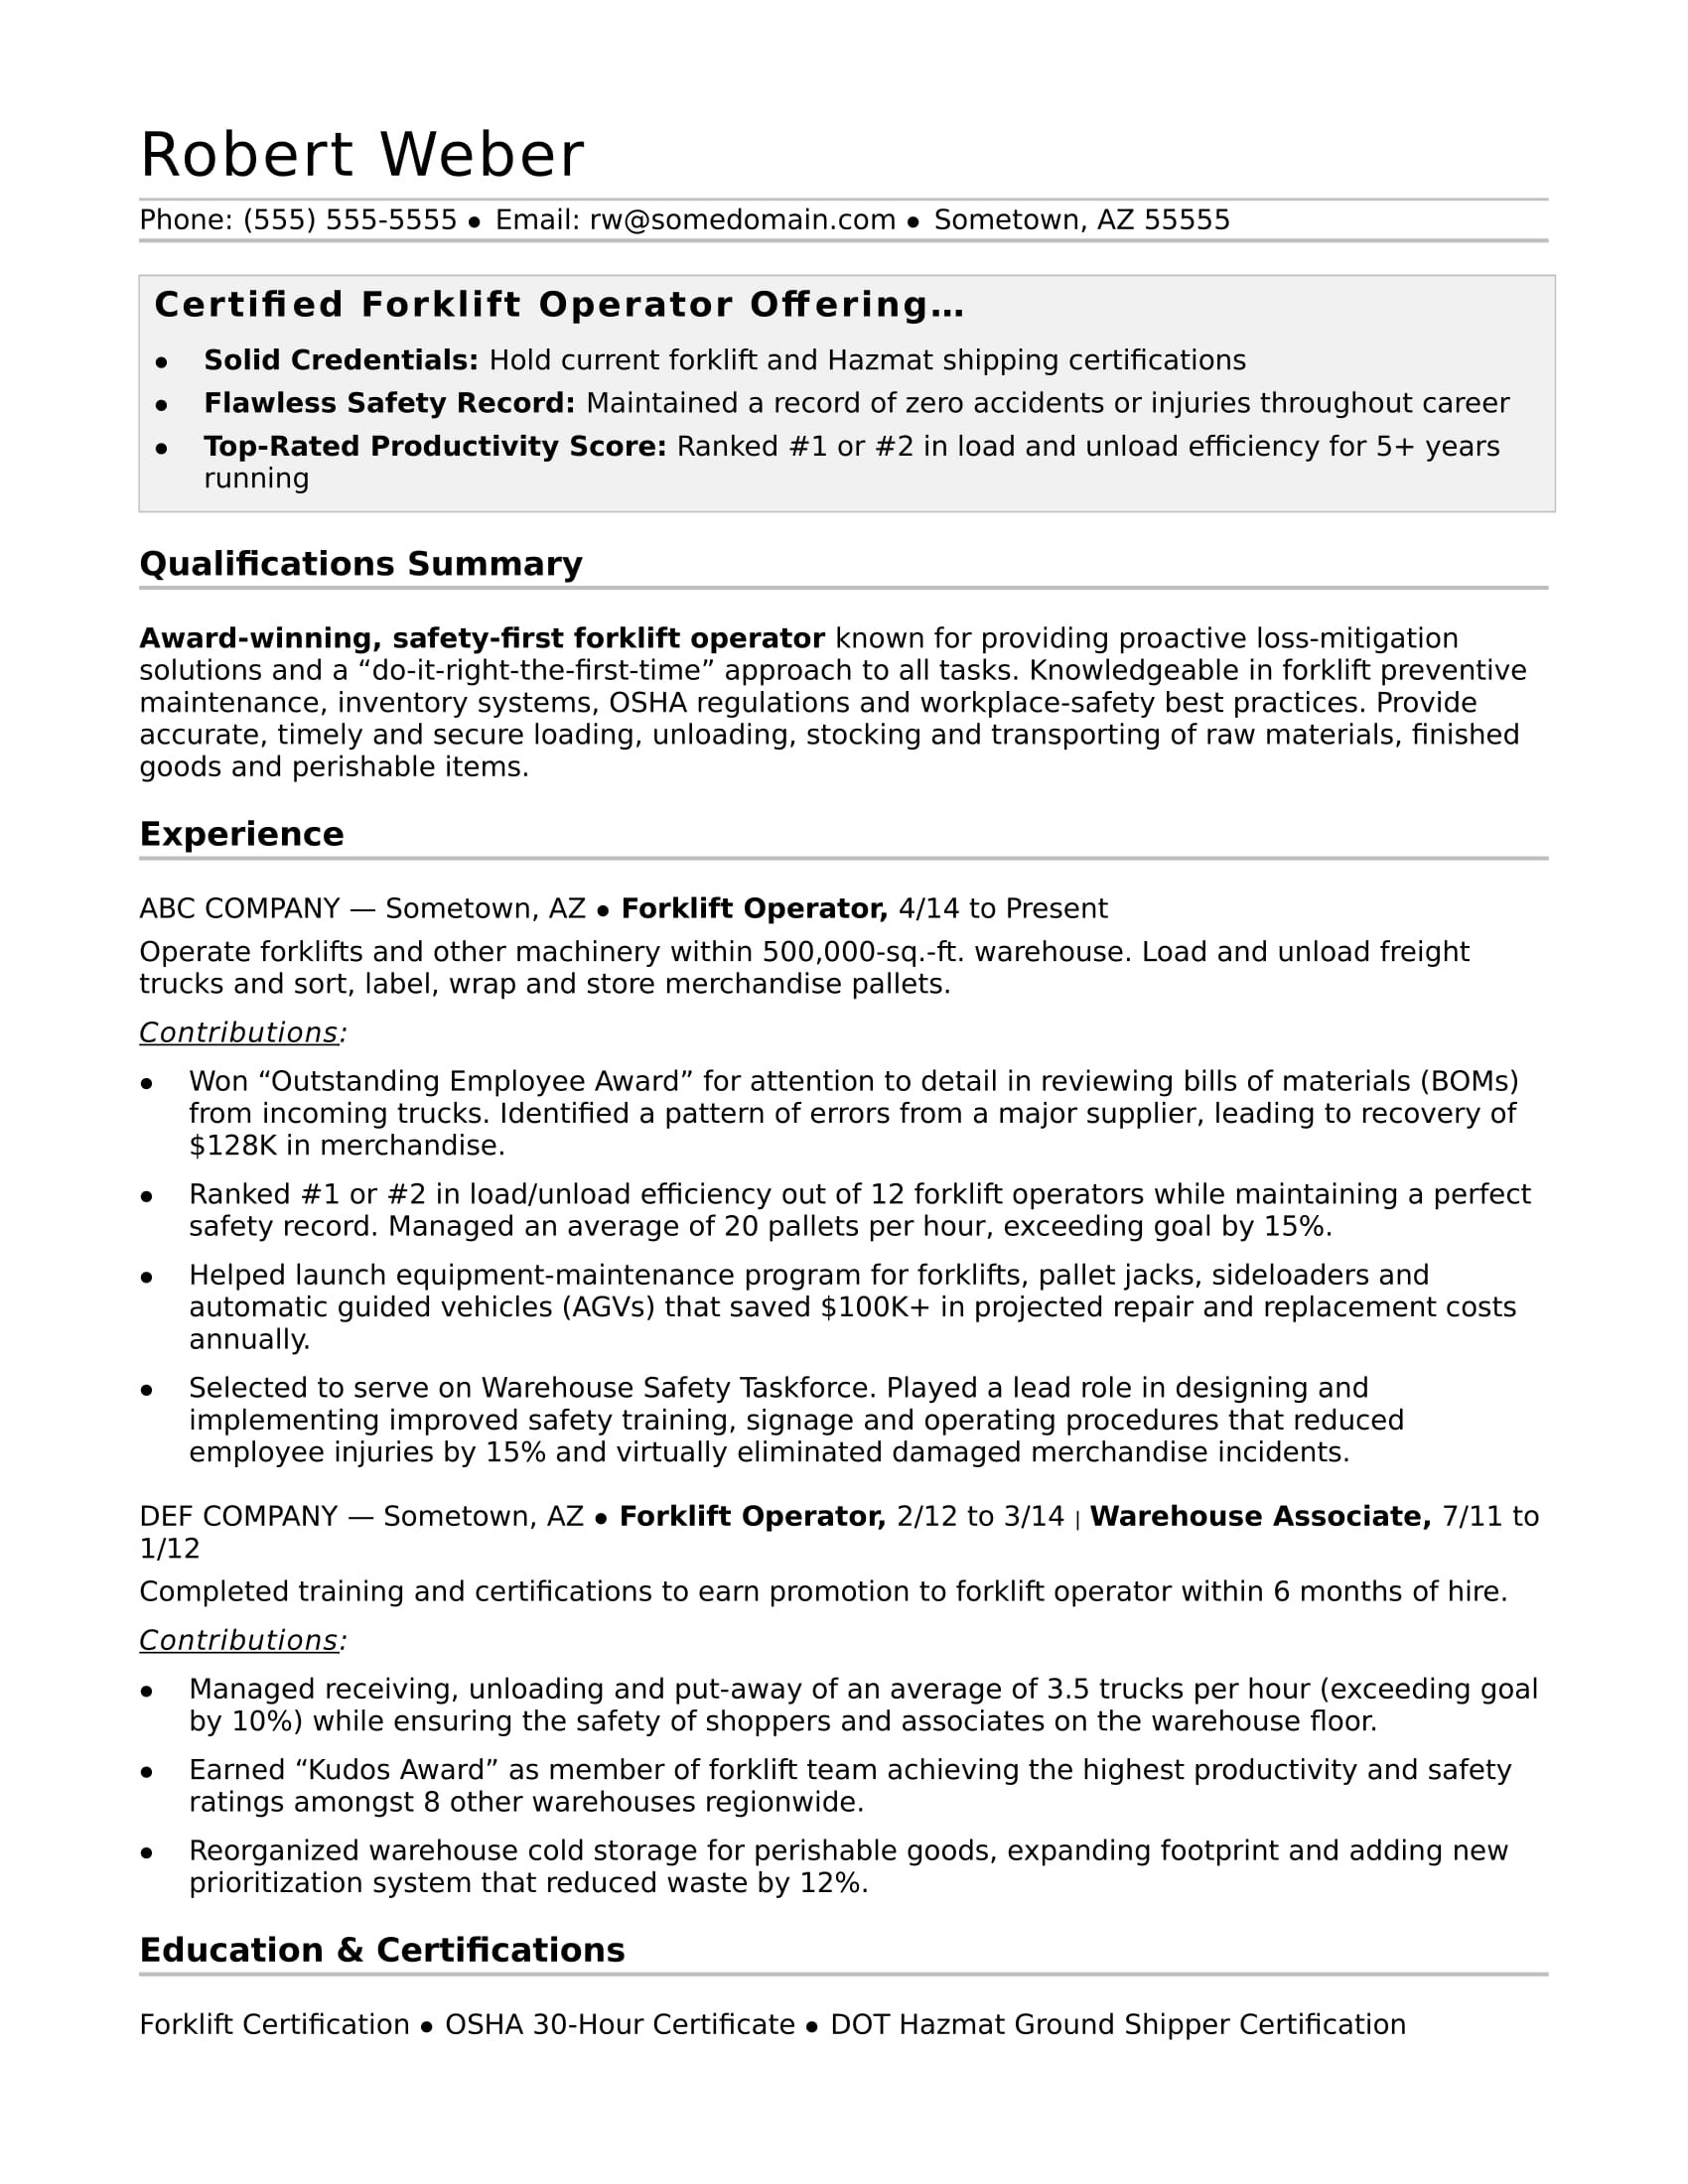 Operation and Maintenance Technician Resume Sample Monster forklift Operator Resume Monster.com